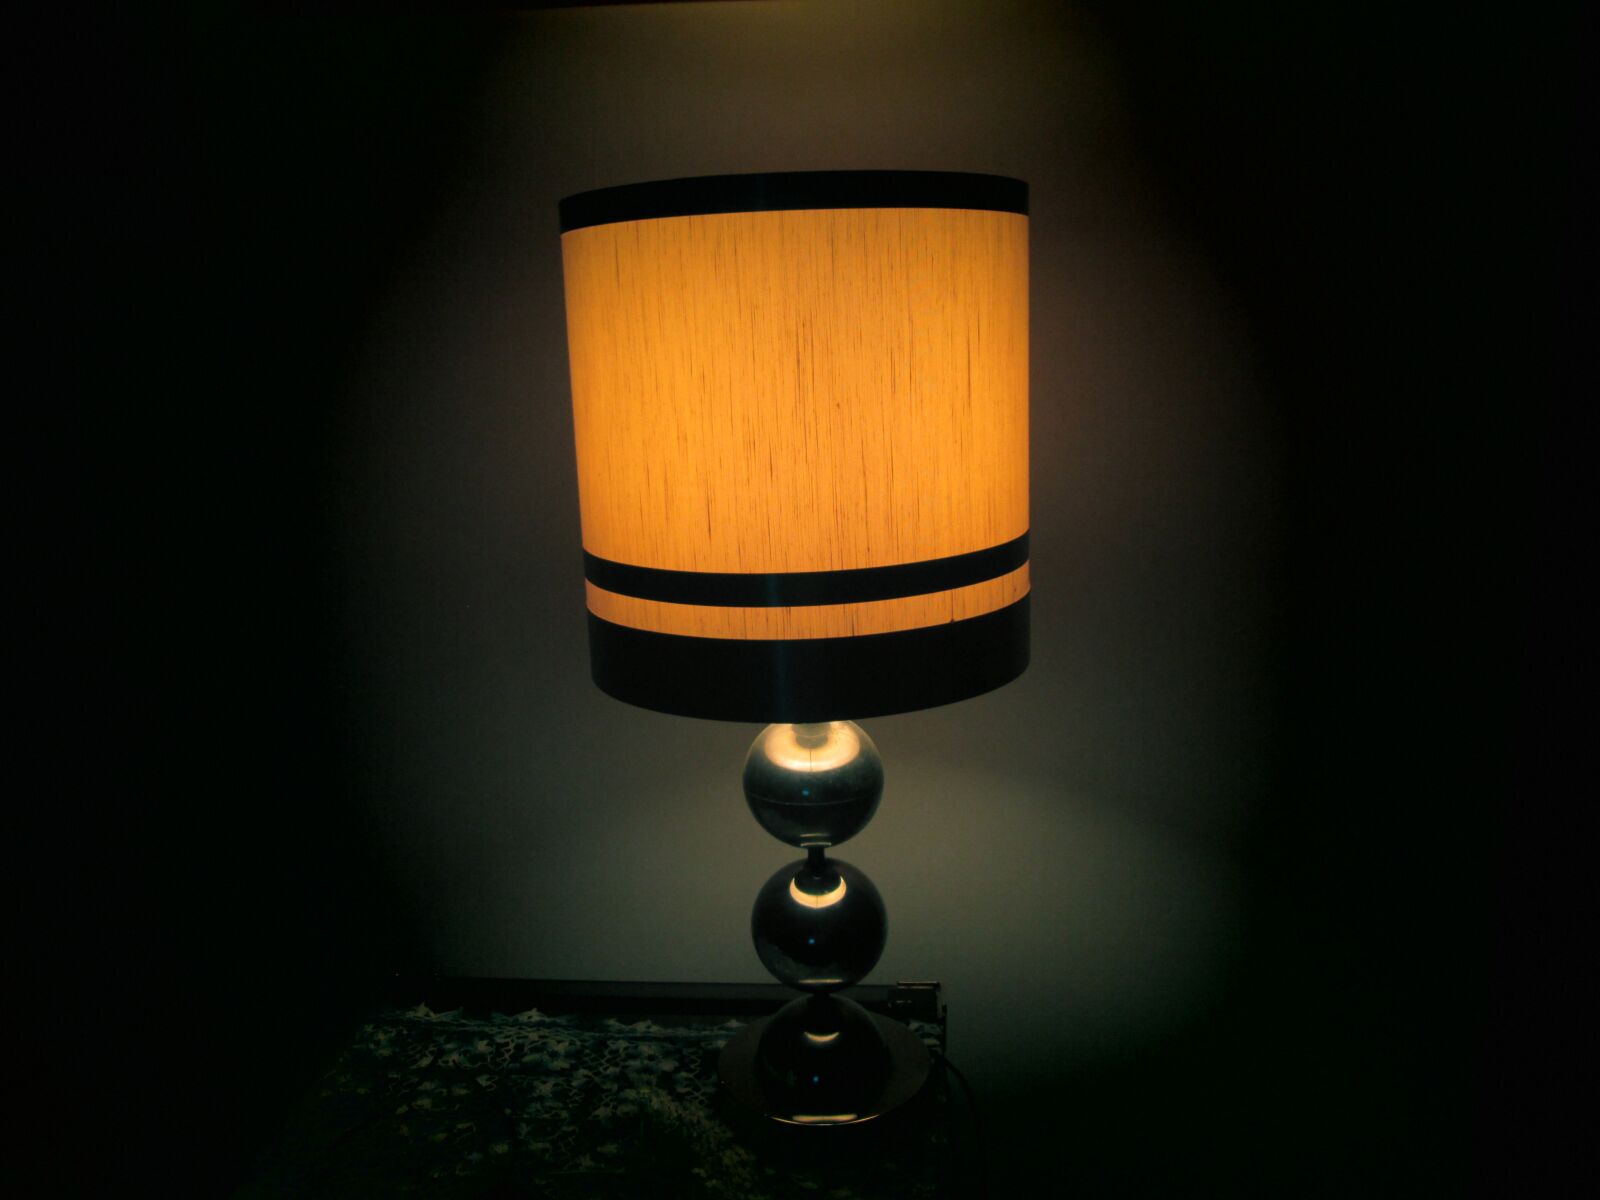 Canon PowerShot A2500 sample photo. Luz de noche, lampara photography